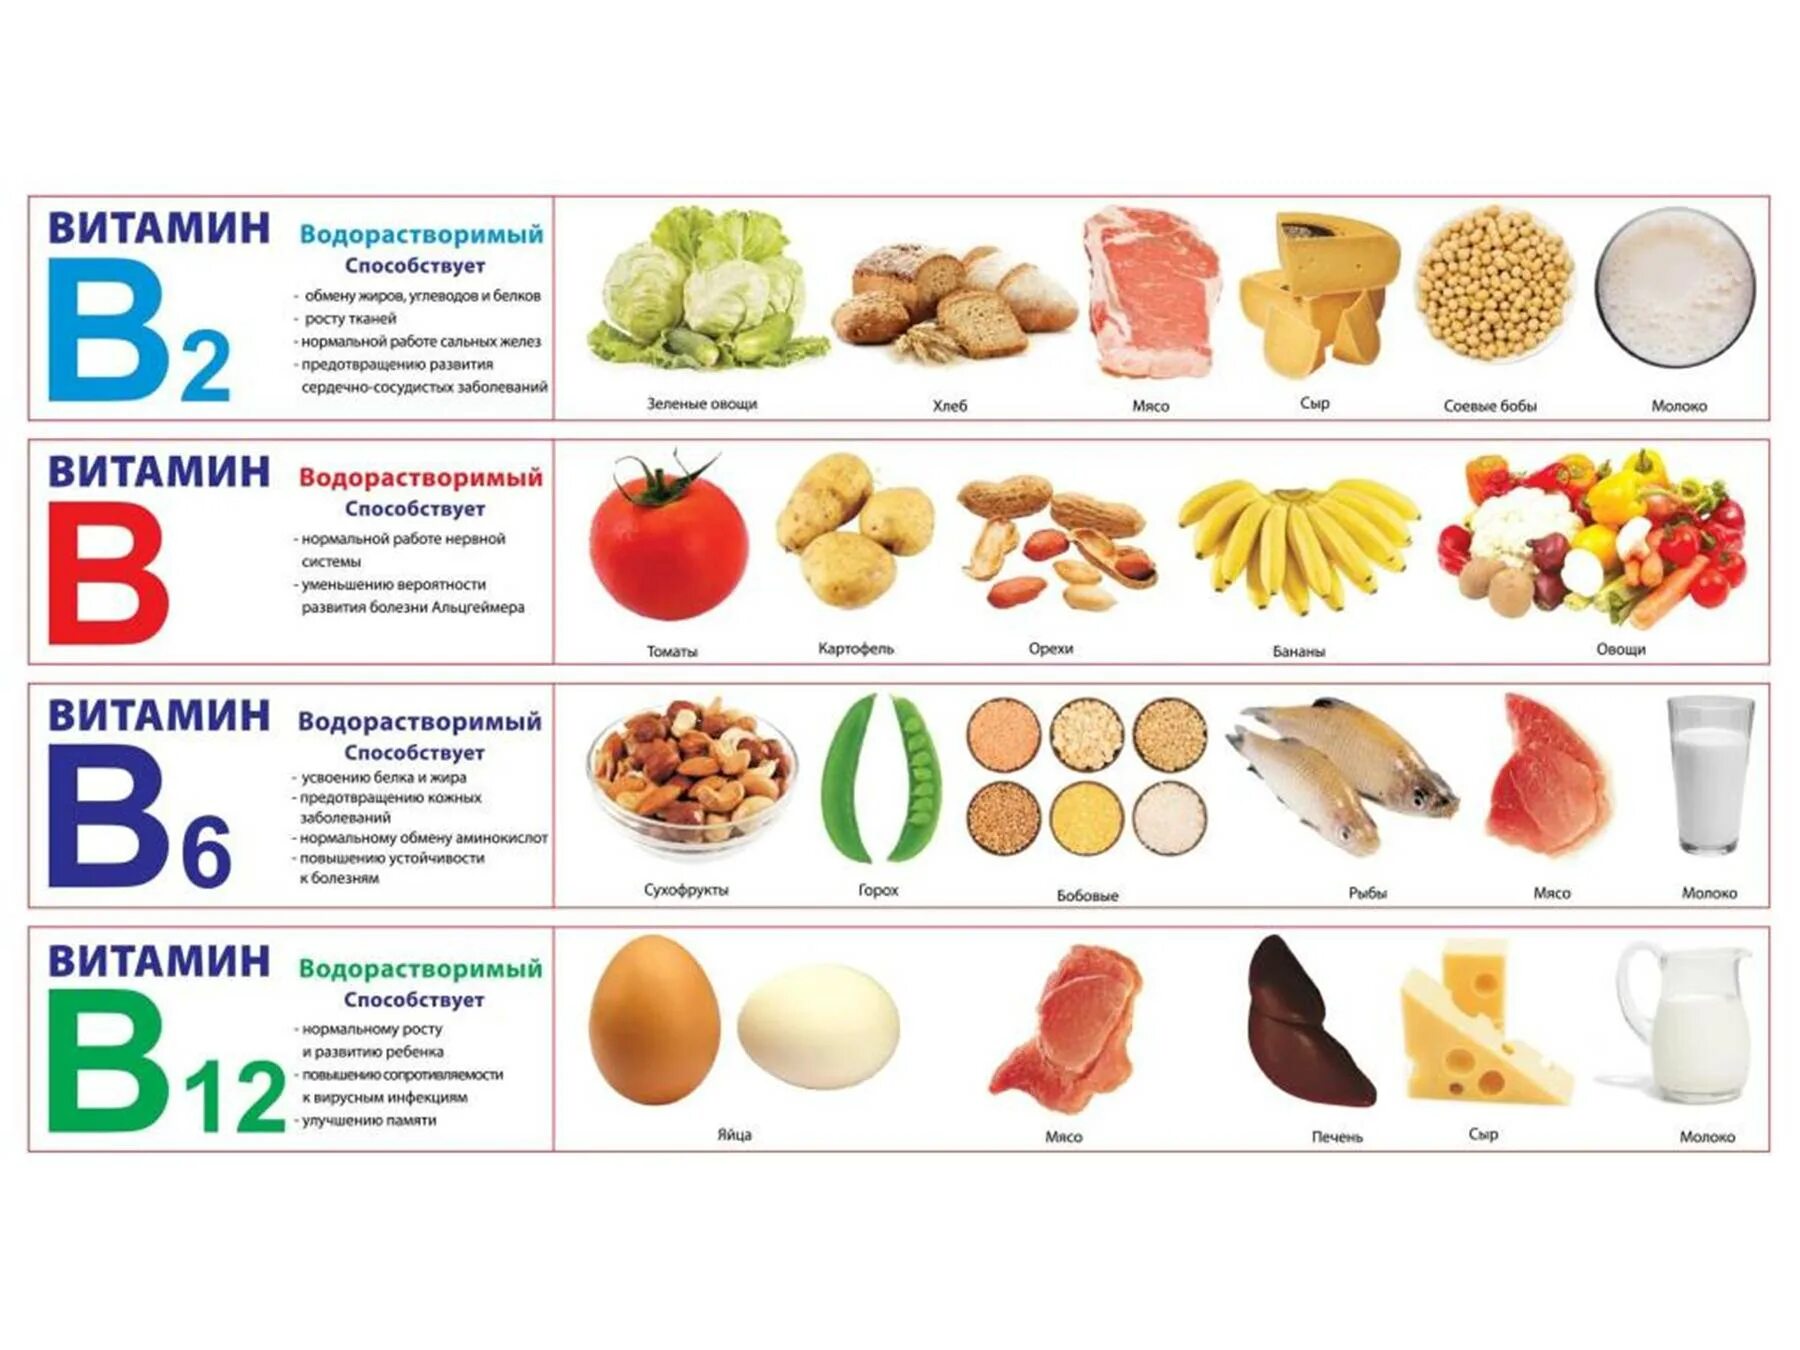 Витамины в продуктах для детей. Витамины в пищевых продуктах. Здоровое питание таблица витаминов. Правильное питание витамины. Продукты здорового питания таблица.